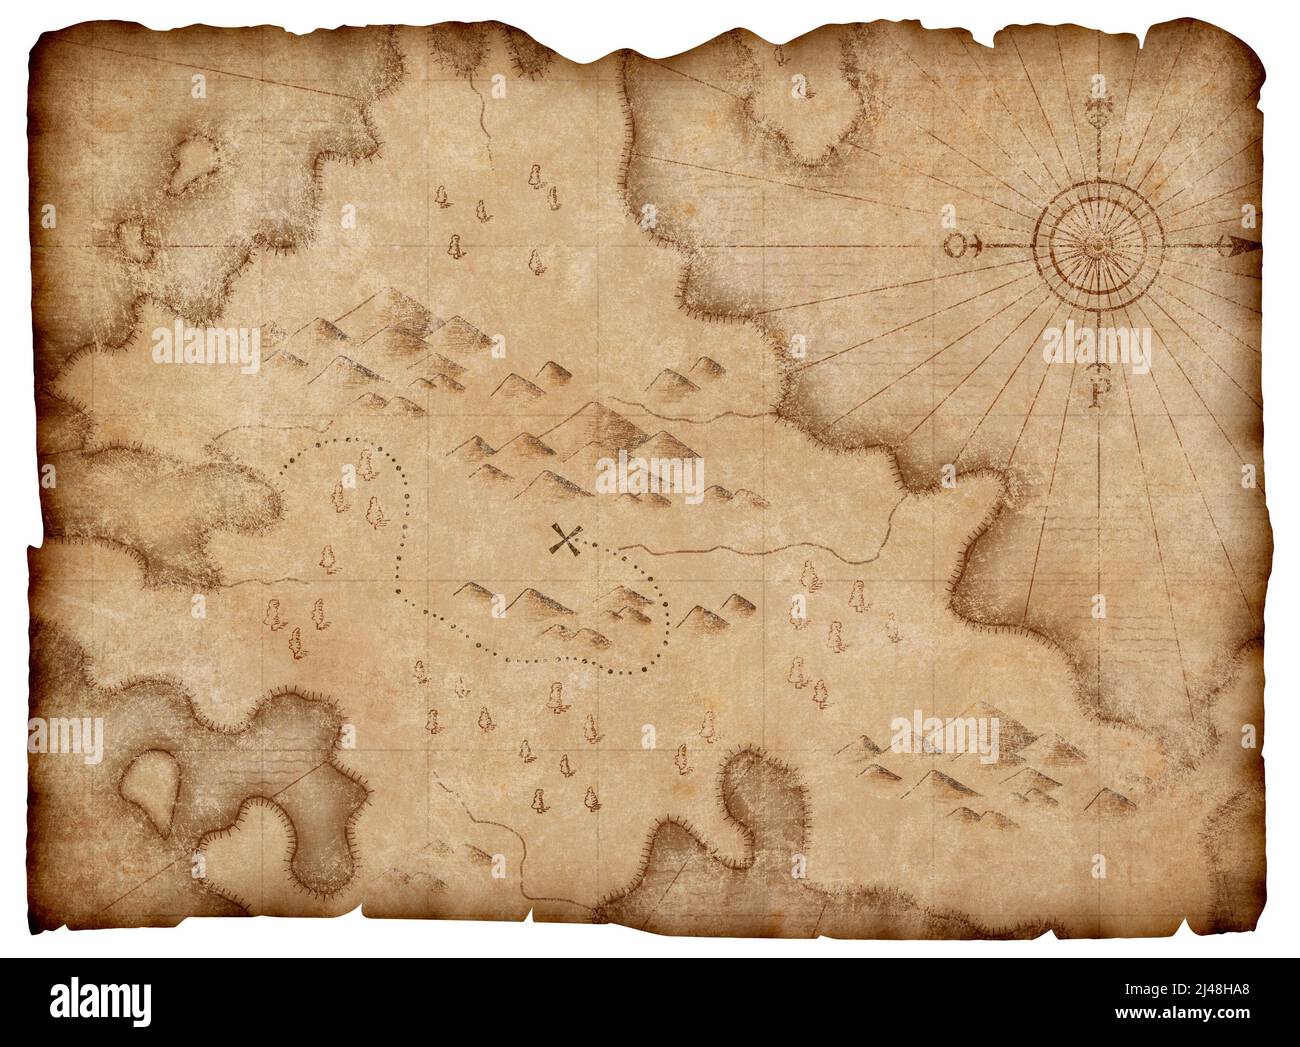 mapa medieval de los piratas con tesoros de la marca de camino aislado Foto de stock